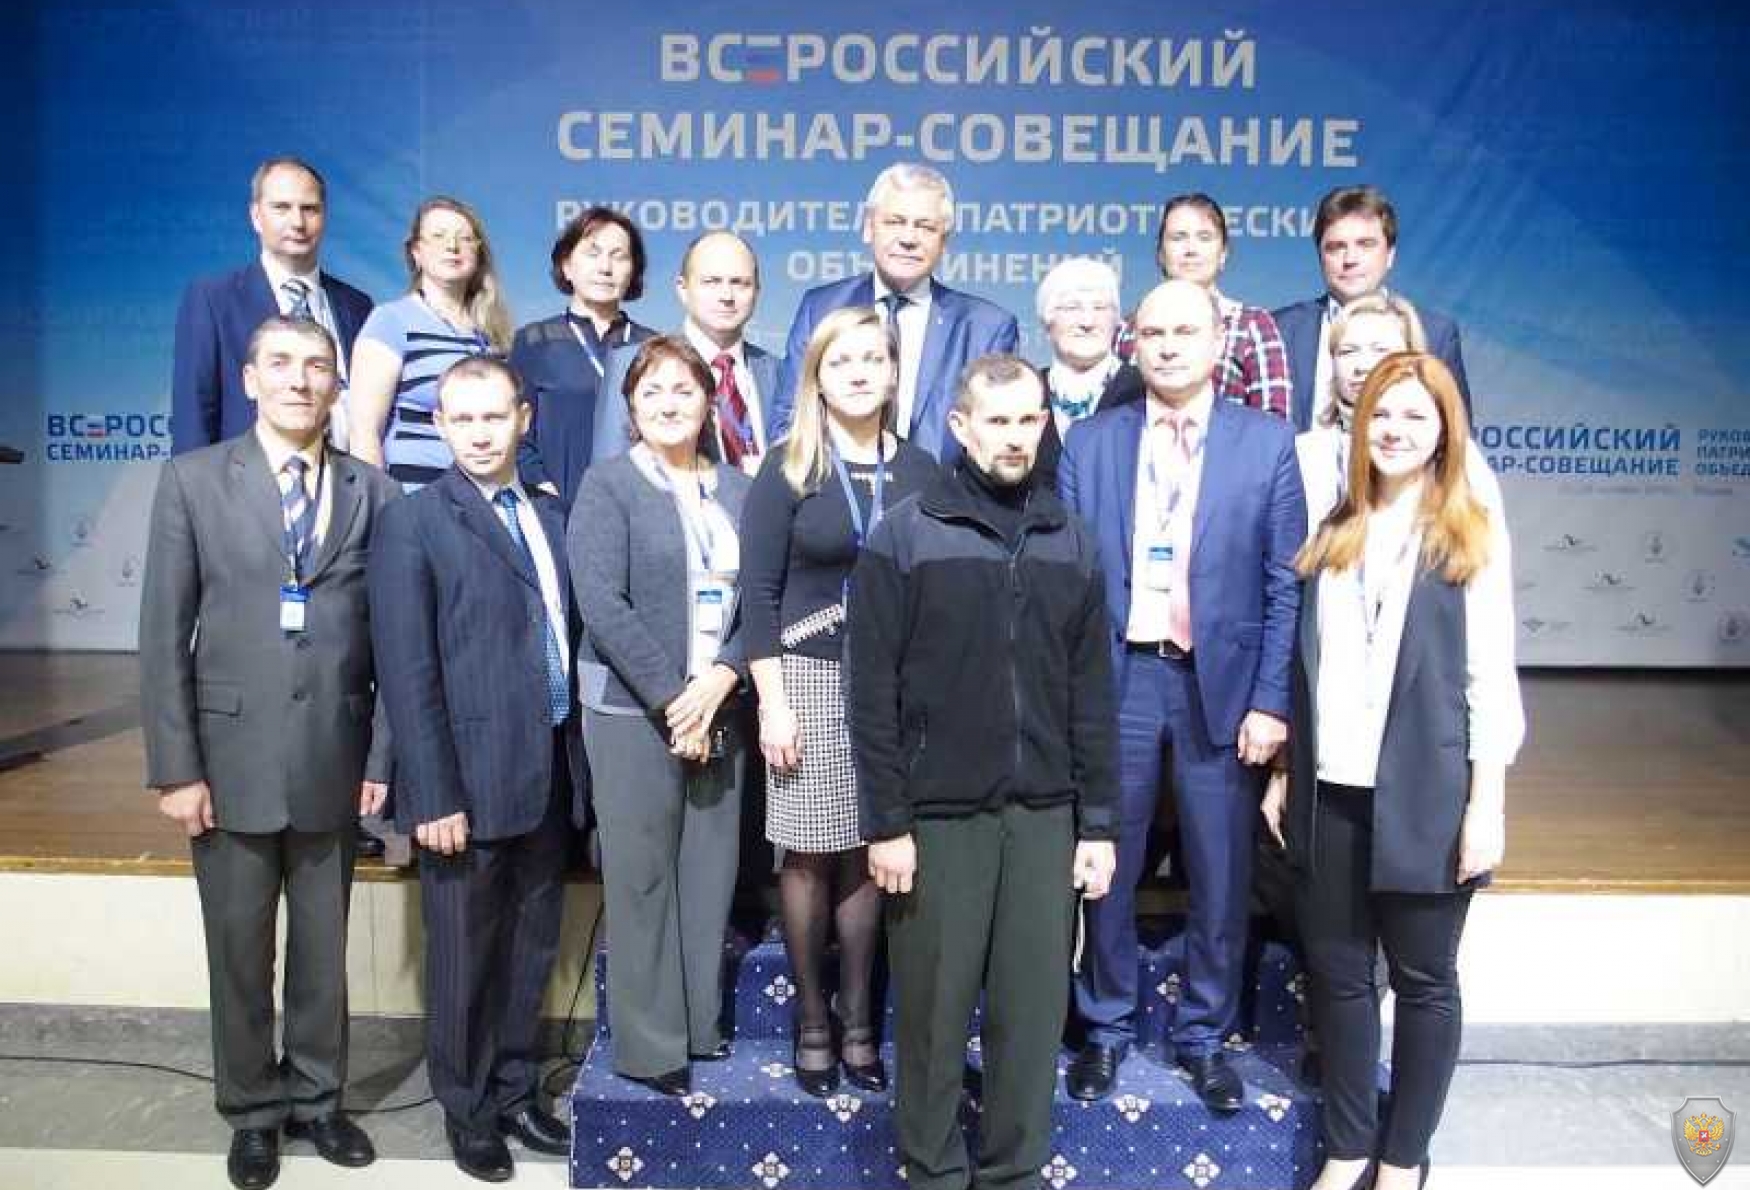 В Москве состоялся всероссийский семинар-совещание руководителей патриотических объединений